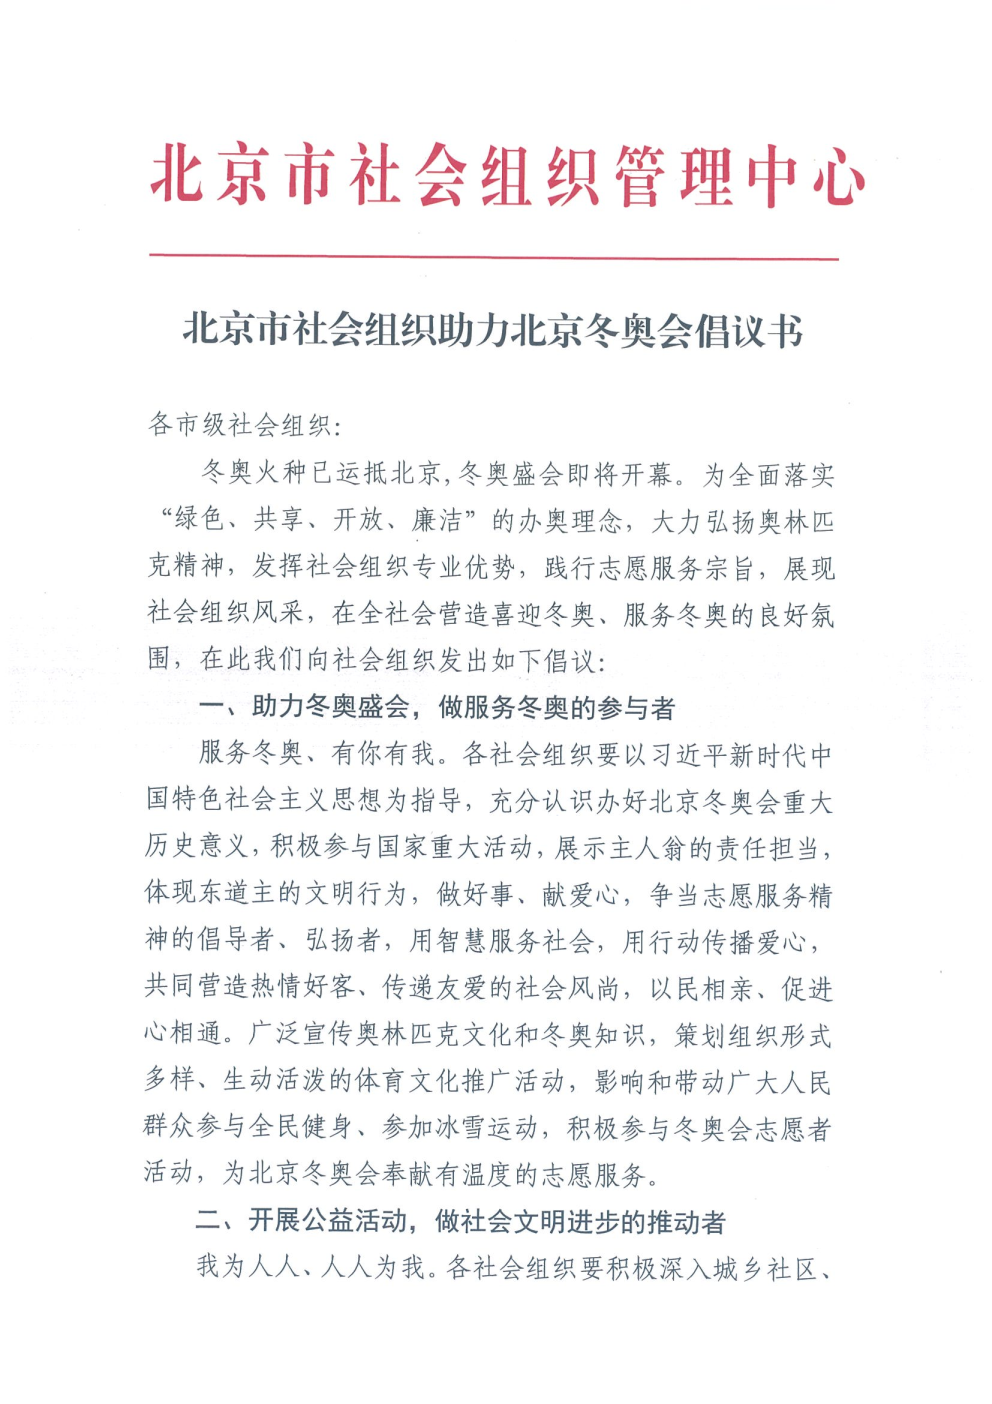 北京市社会组织助力北京冬奥会倡议书_Page1.png